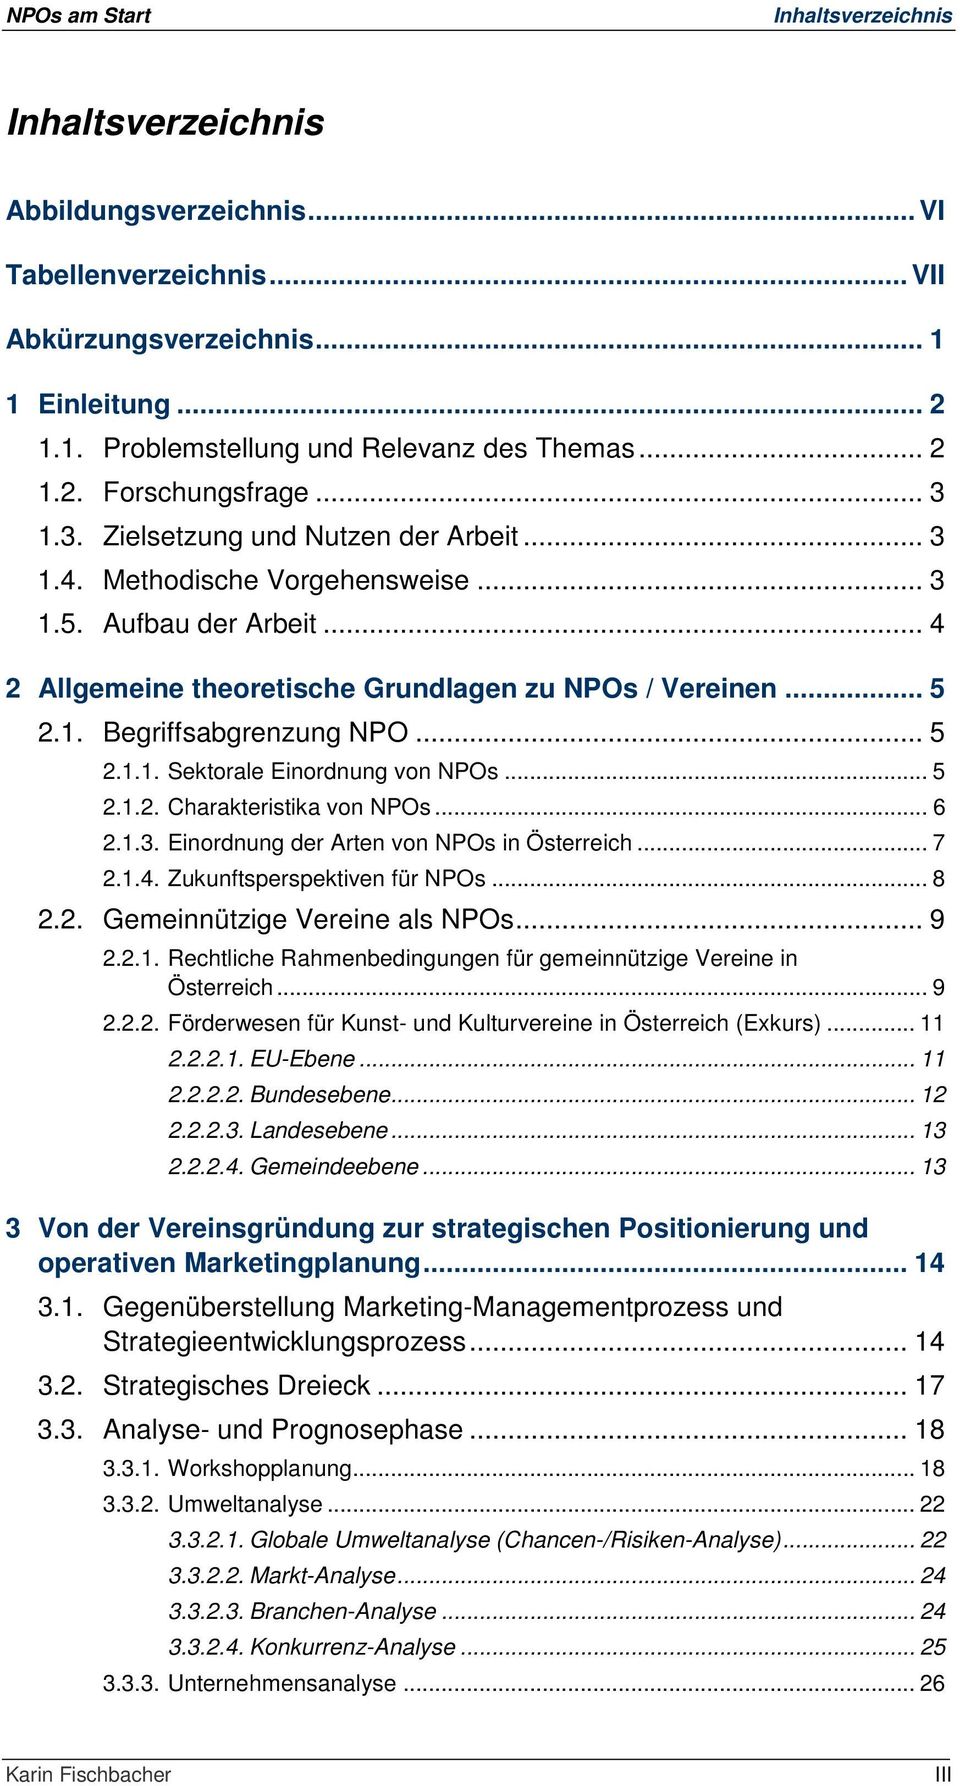 .. 5 2.1.1. Sektorale Einordnung von NPOs... 5 2.1.2. Charakteristika von NPOs... 6 2.1.3. Einordnung der Arten von NPOs in Österreich... 7 2.1.4. Zukunftsperspektiven für NPOs... 8 2.2. Gemeinnützige Vereine als NPOs.